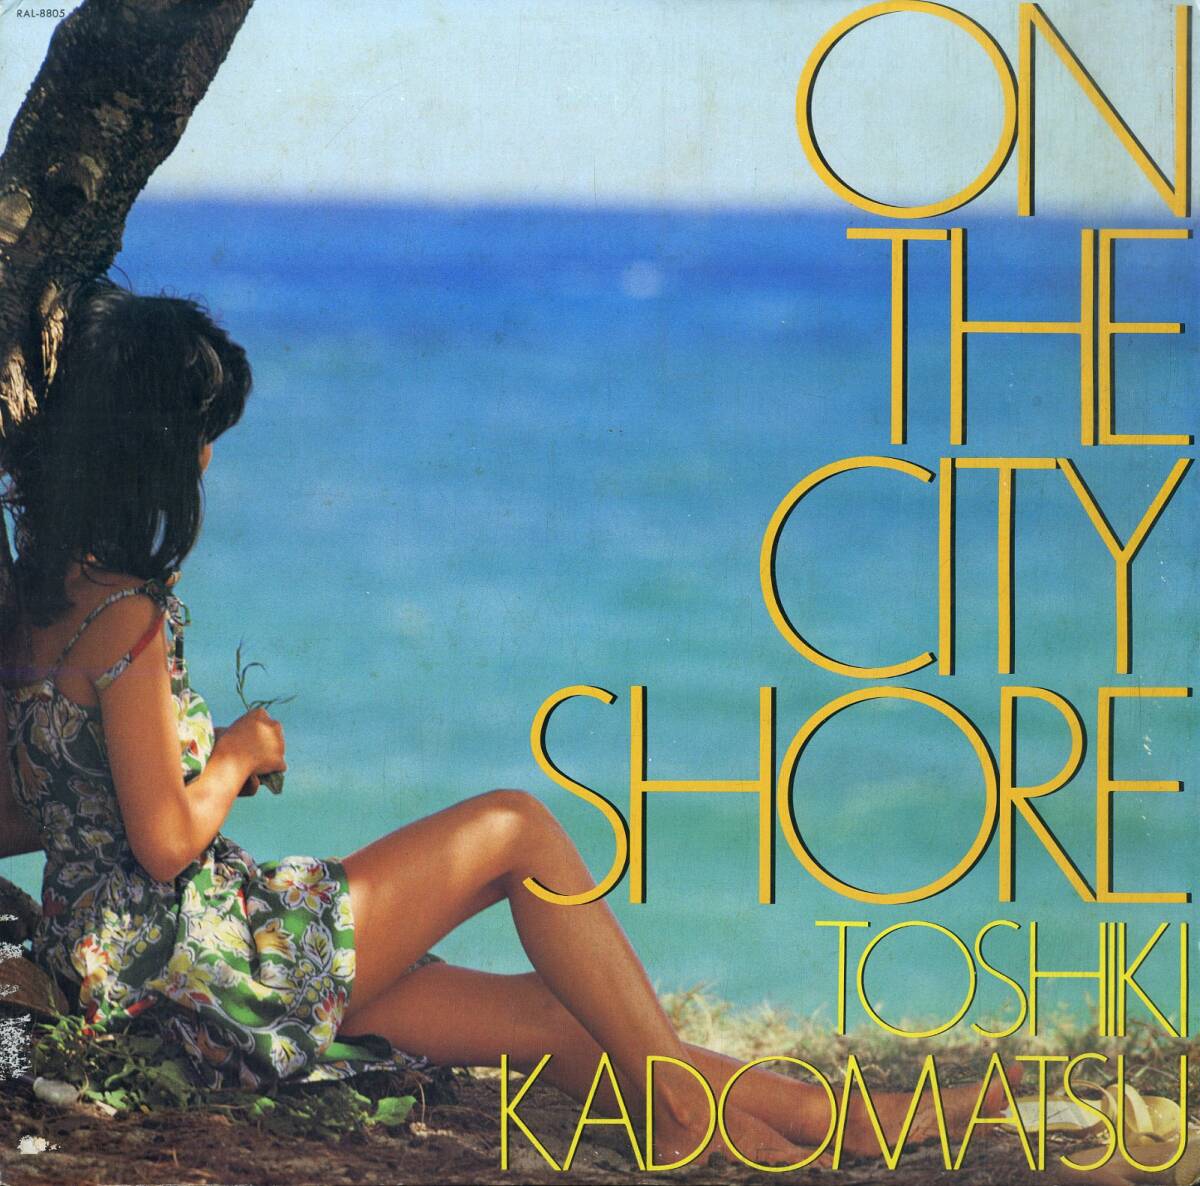 A00587200/LP/角松敏生「On The City Shore (1983年・RAL-8805・ディスコ・DISCO・ソウル・SOUL・ファンク・FUNK・ライトメロウ)」_画像1